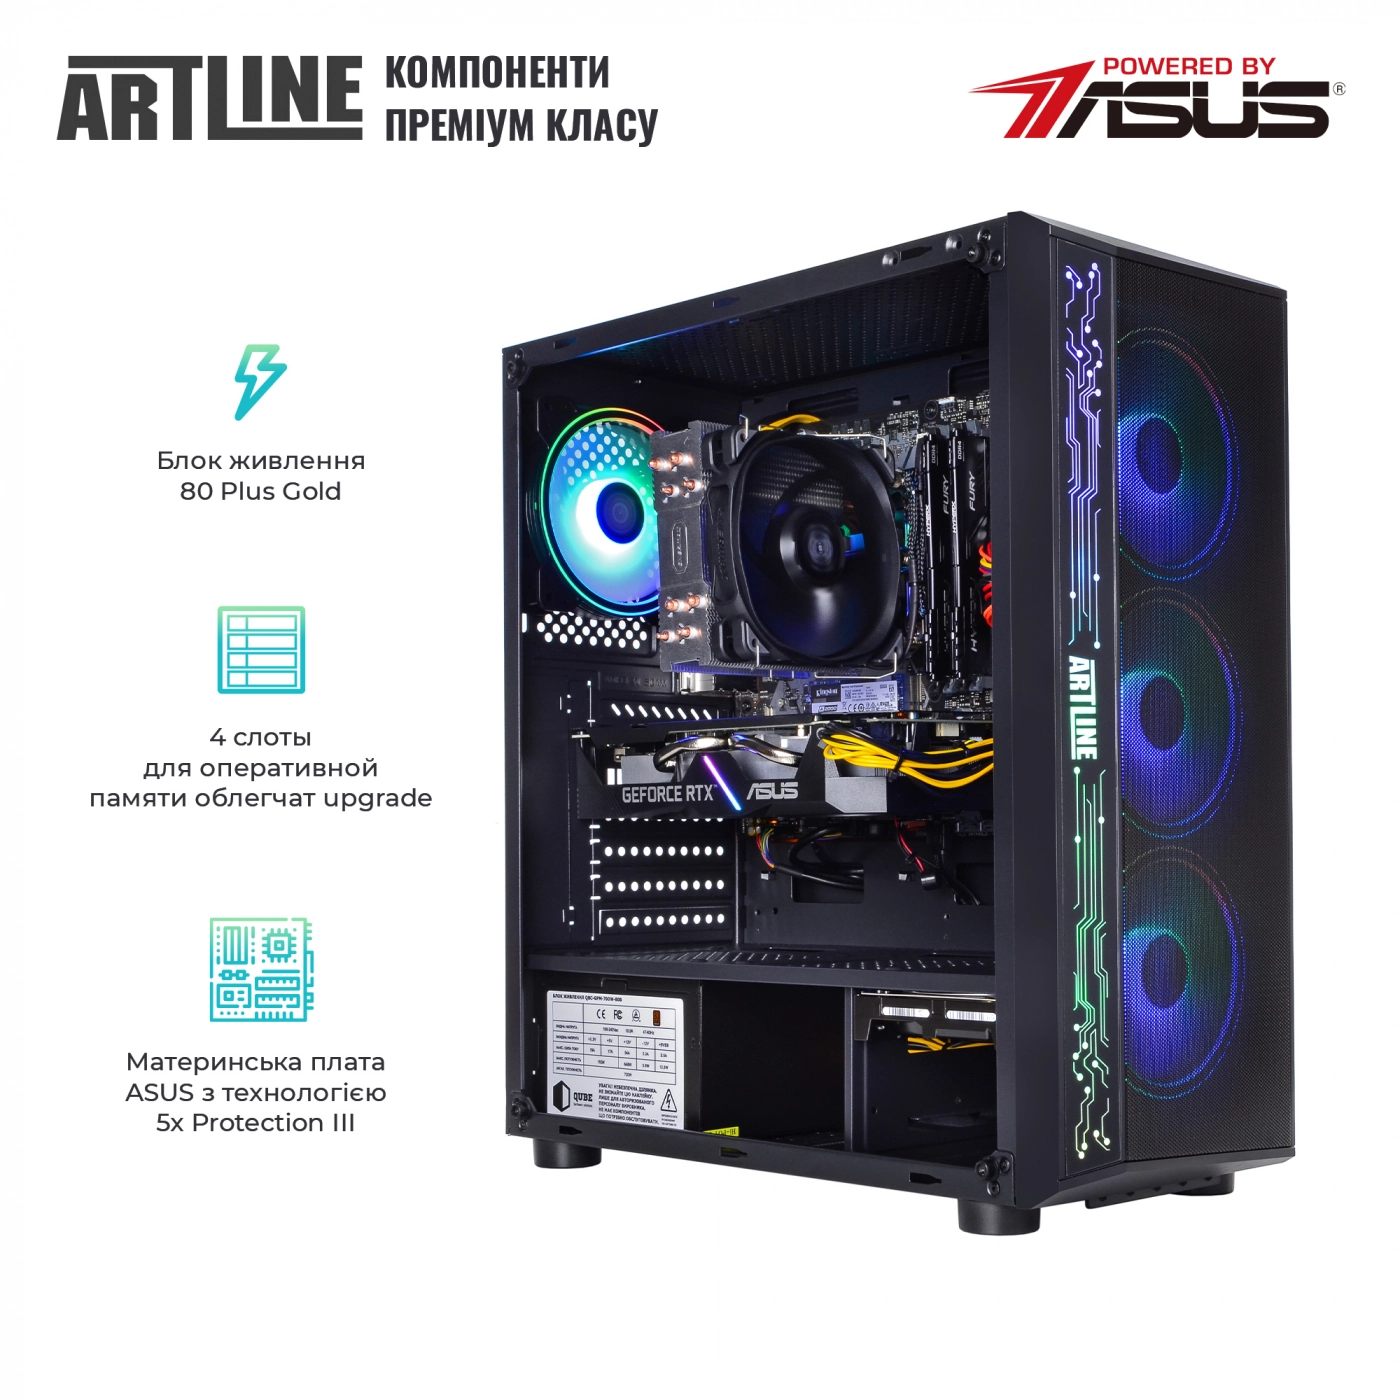 Купить Компьютер ARTLINE Gaming X75v22 - фото 2